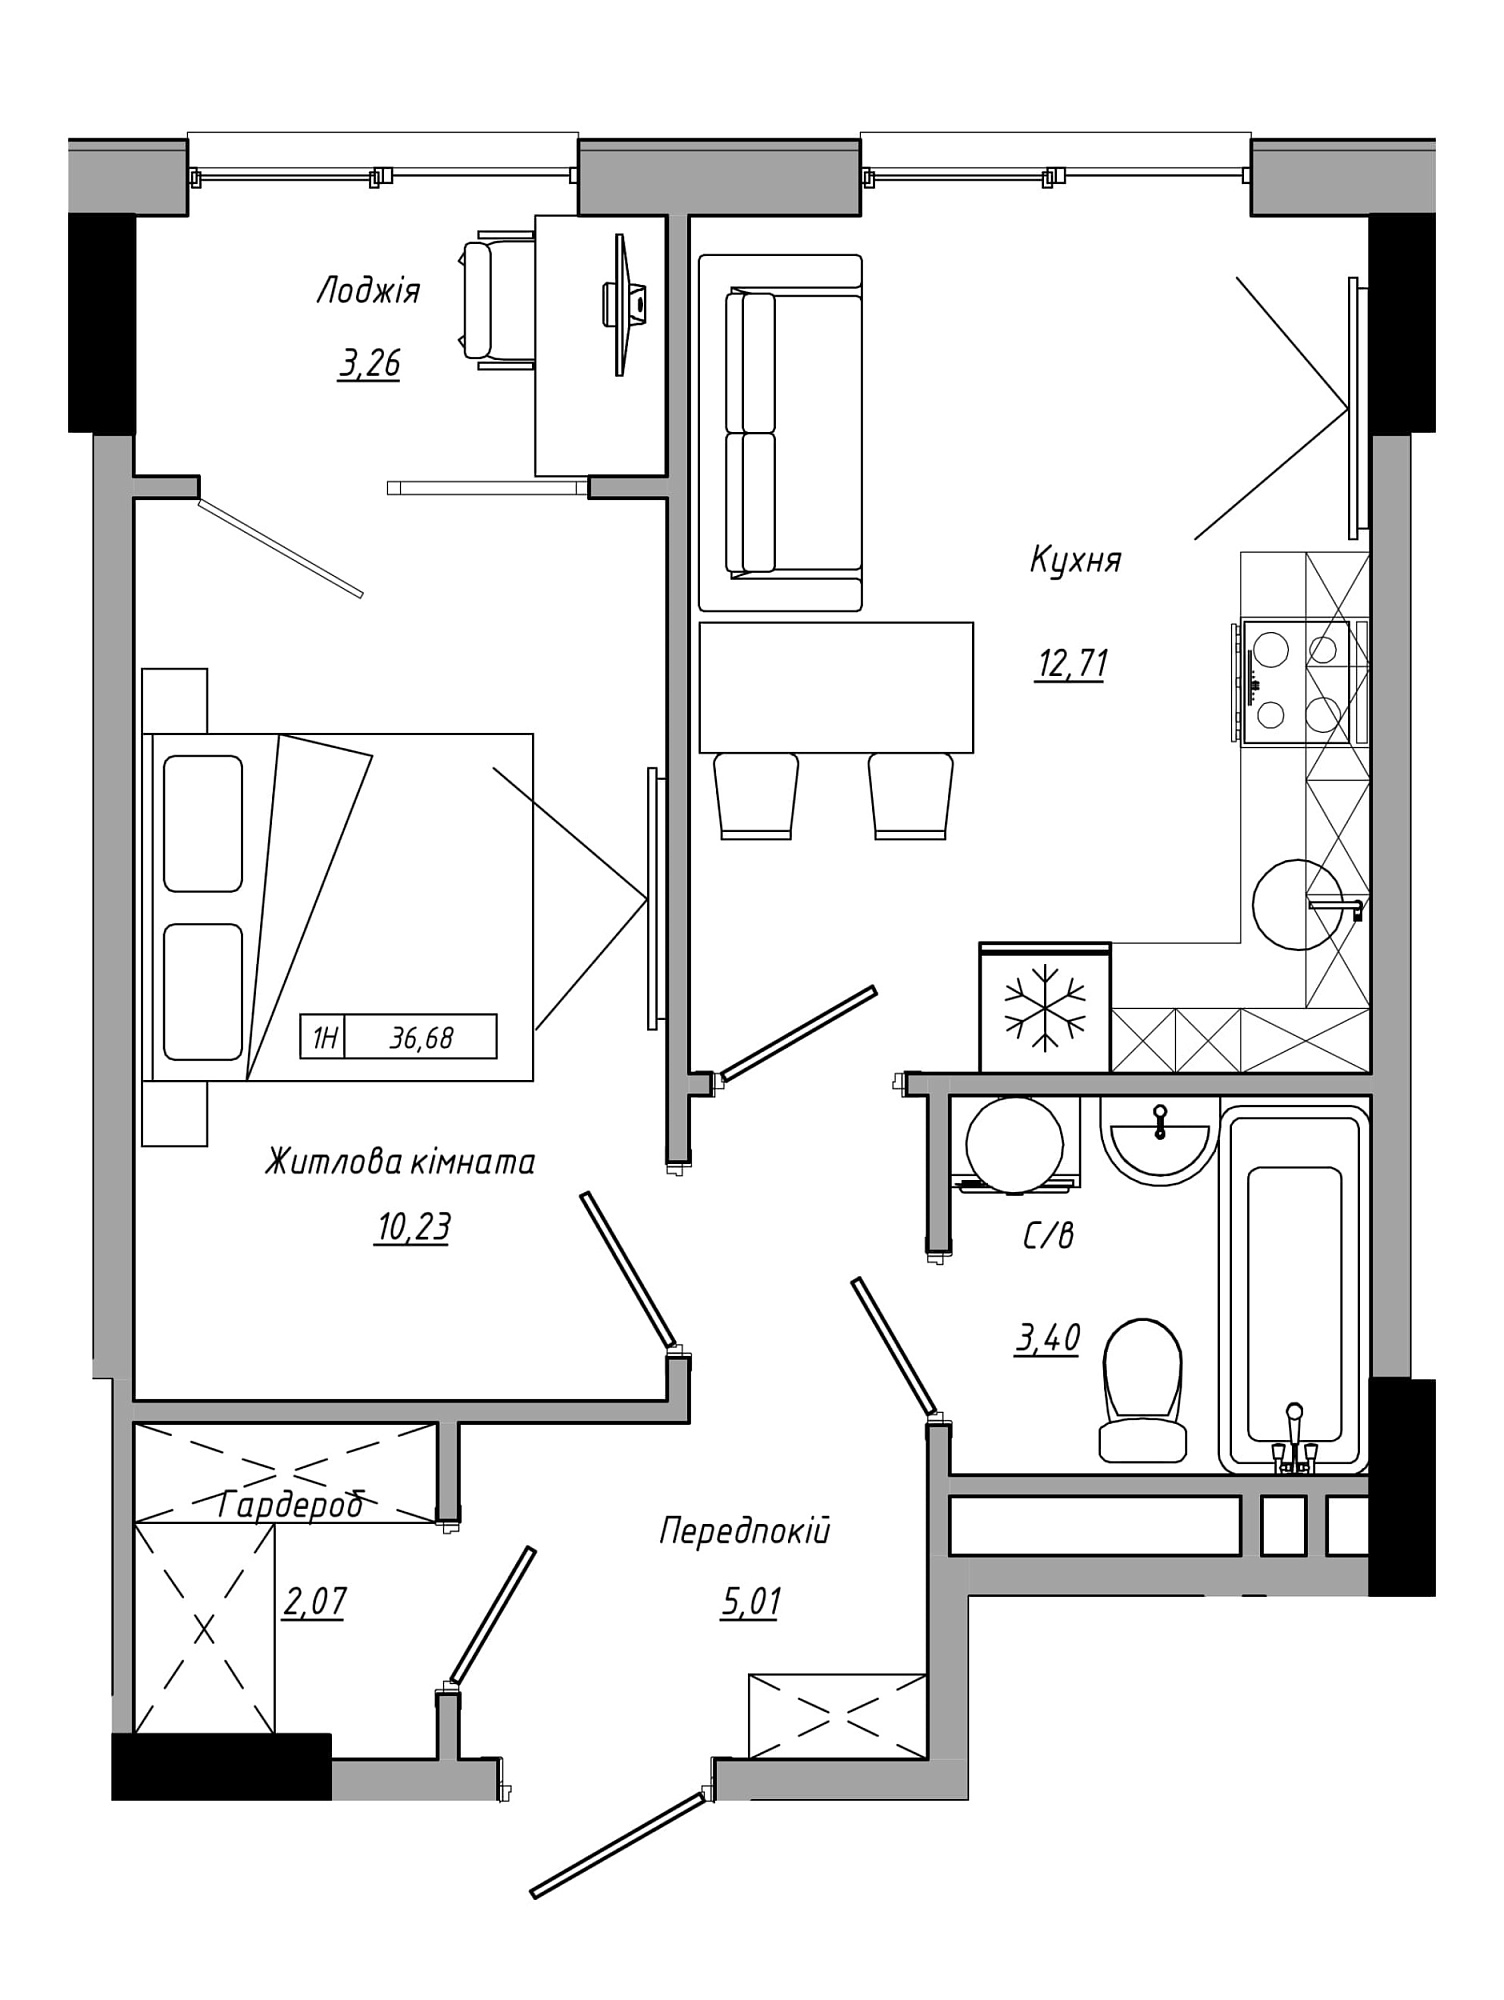 Планировка 1-к квартира площей 36.68м2, AB-21-13/00116.